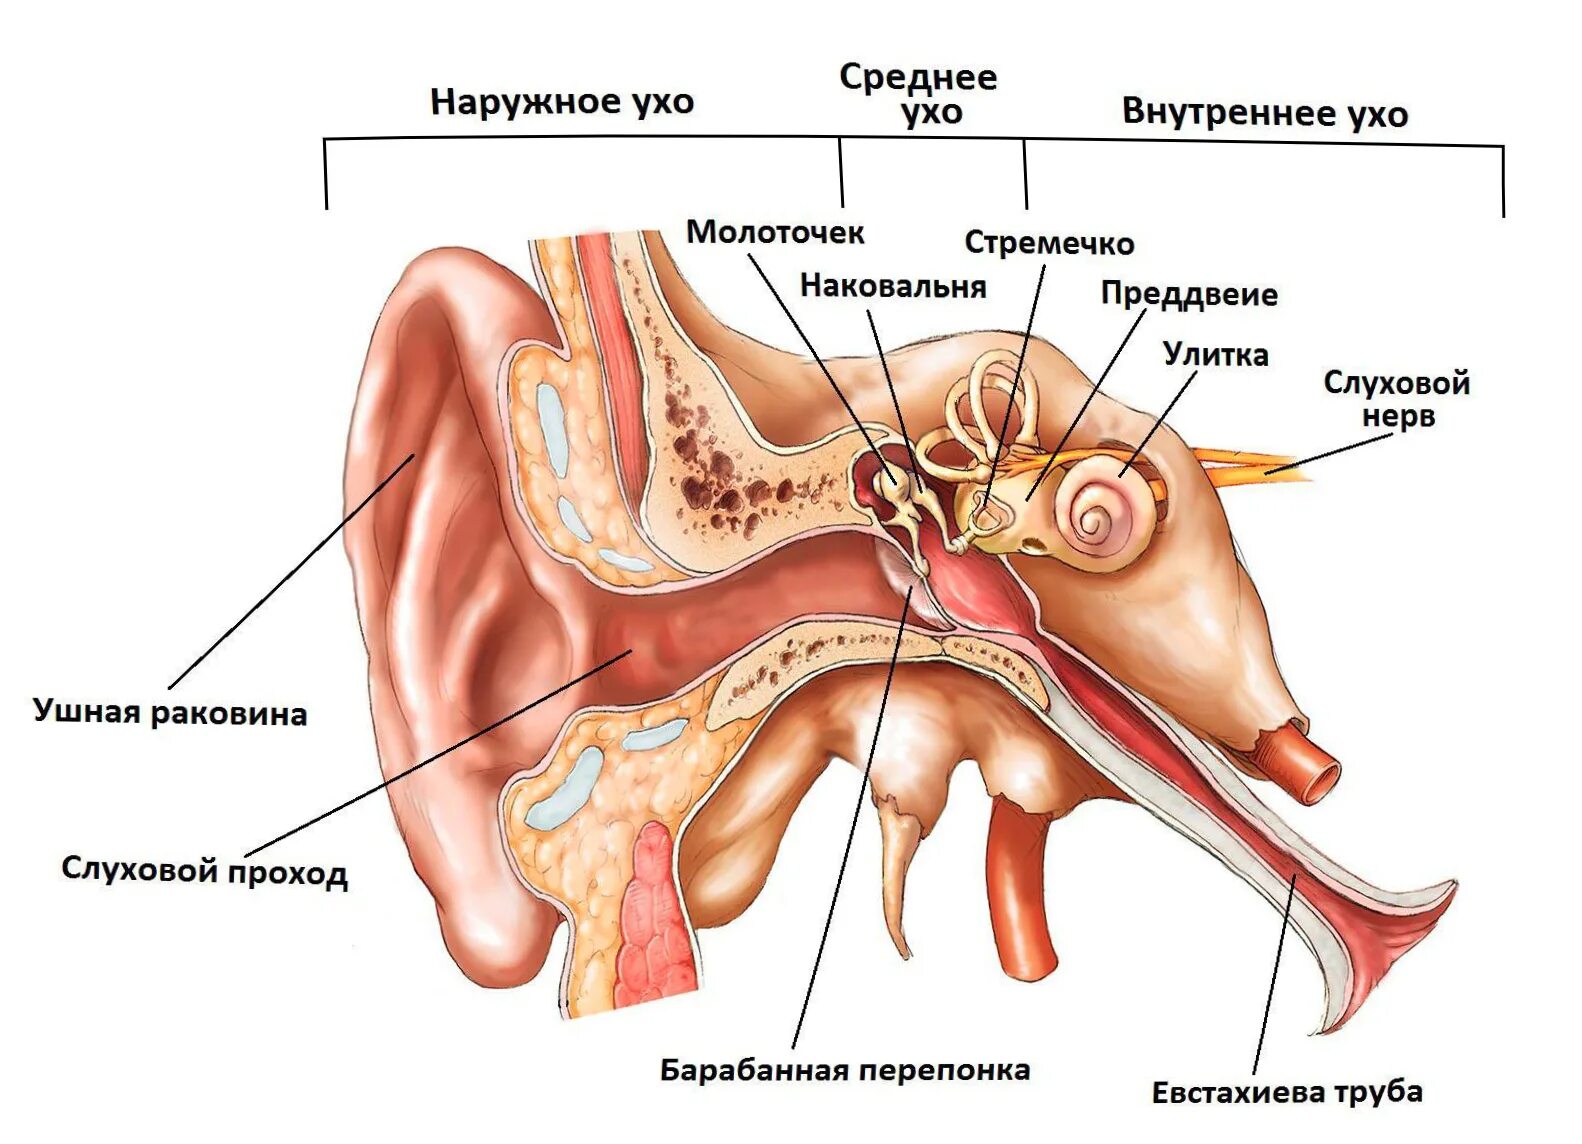 Строение уха человека слуховые косточки. Среднее ухо барабанная перепонка слуховые косточки. Среднее ухо барабанная полость евстахиева труба. Анатомия и физиология уха слуховой анализатор. Полость заполненная воздухом в ухе